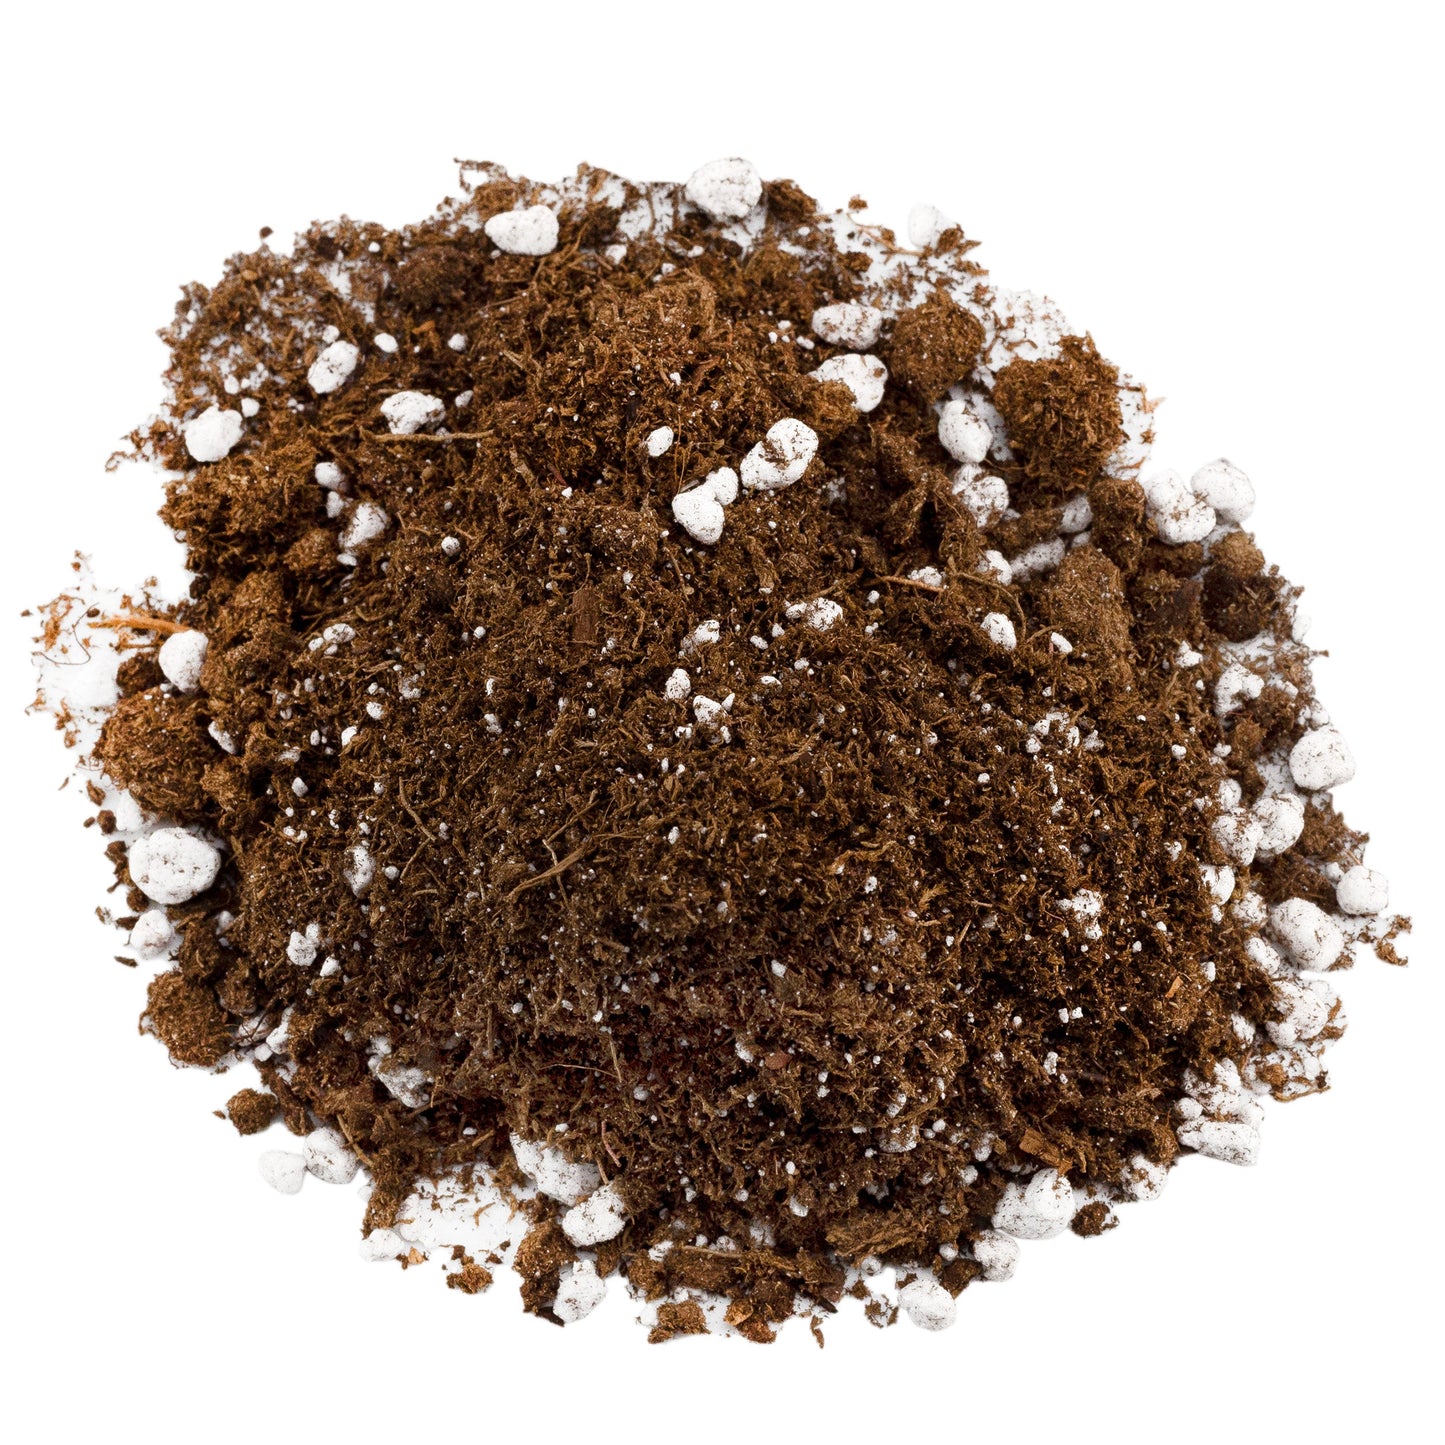 Carnivorous Plant Potting Soil Mix (1 Quart) - SSKIT025